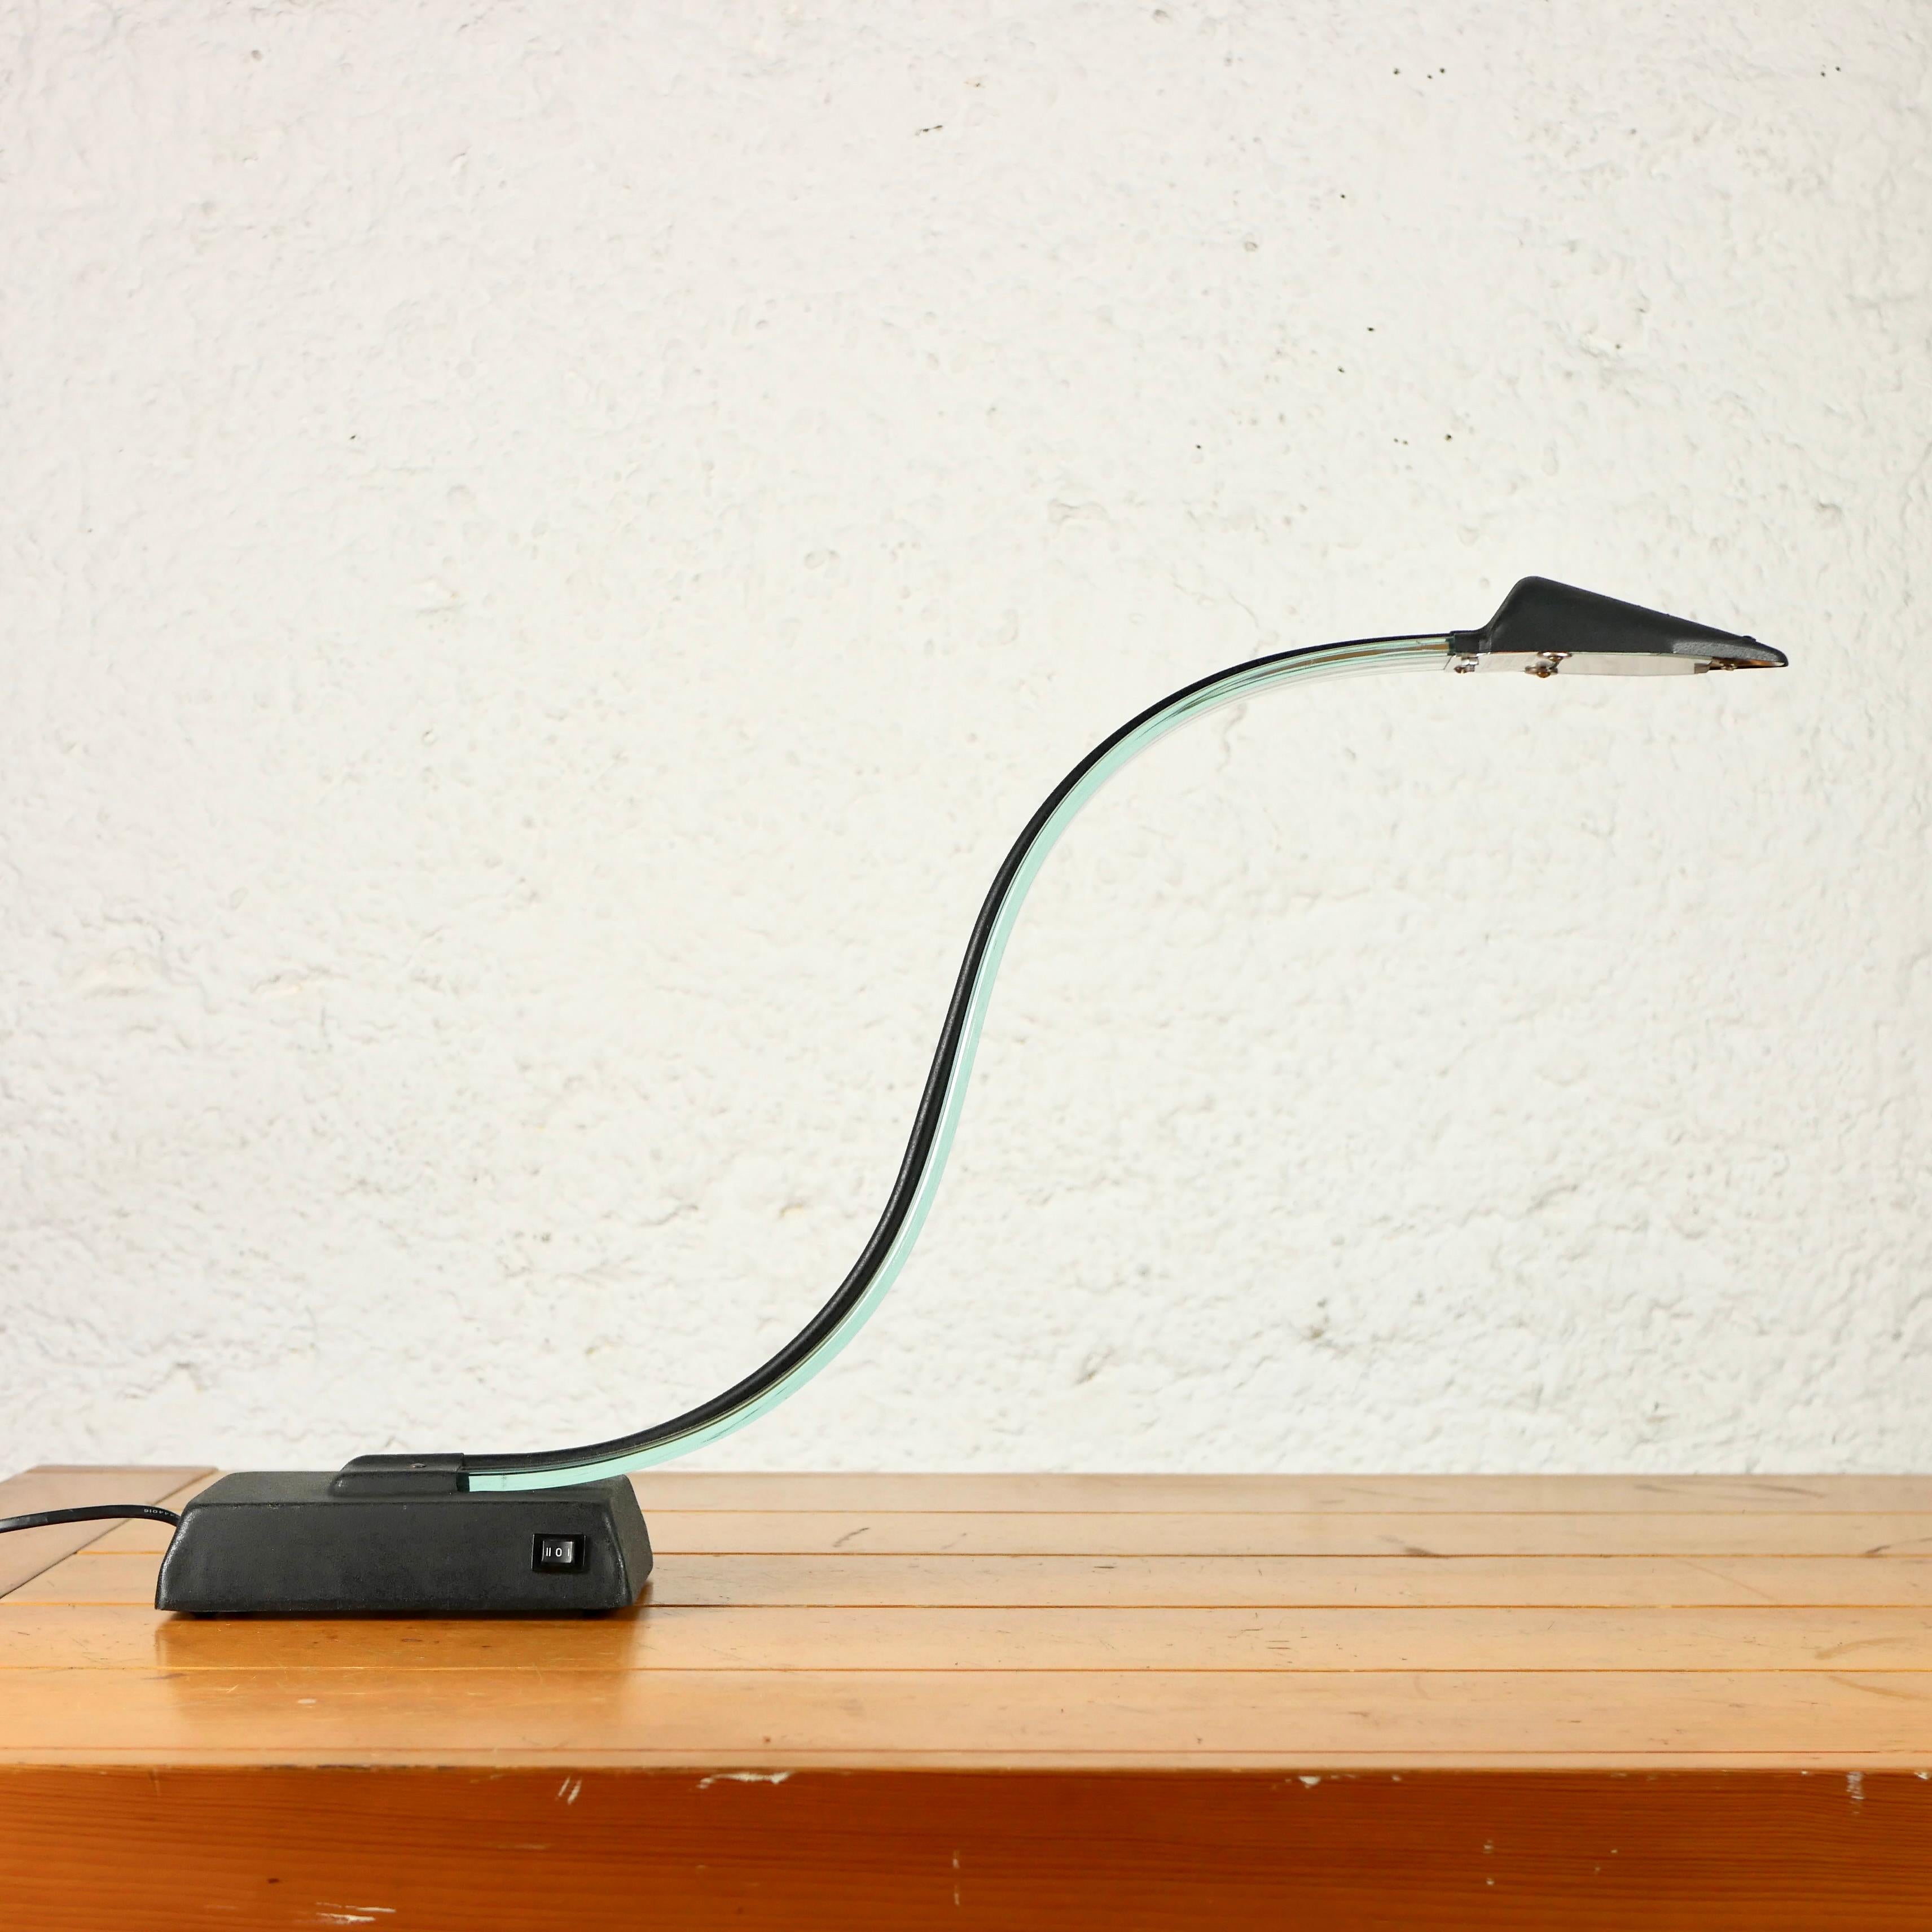 Belle lampe de bureau cobra fabriquée dans les années 1980 à Taïwan, par Lumijura. Plexiglas et métal.
De style post-moderne, il s'adaptera à tous les intérieurs et ajoutera une touche ludique à votre bureau.
Dimensions : H42cm, L64cm, P12cm
Bon